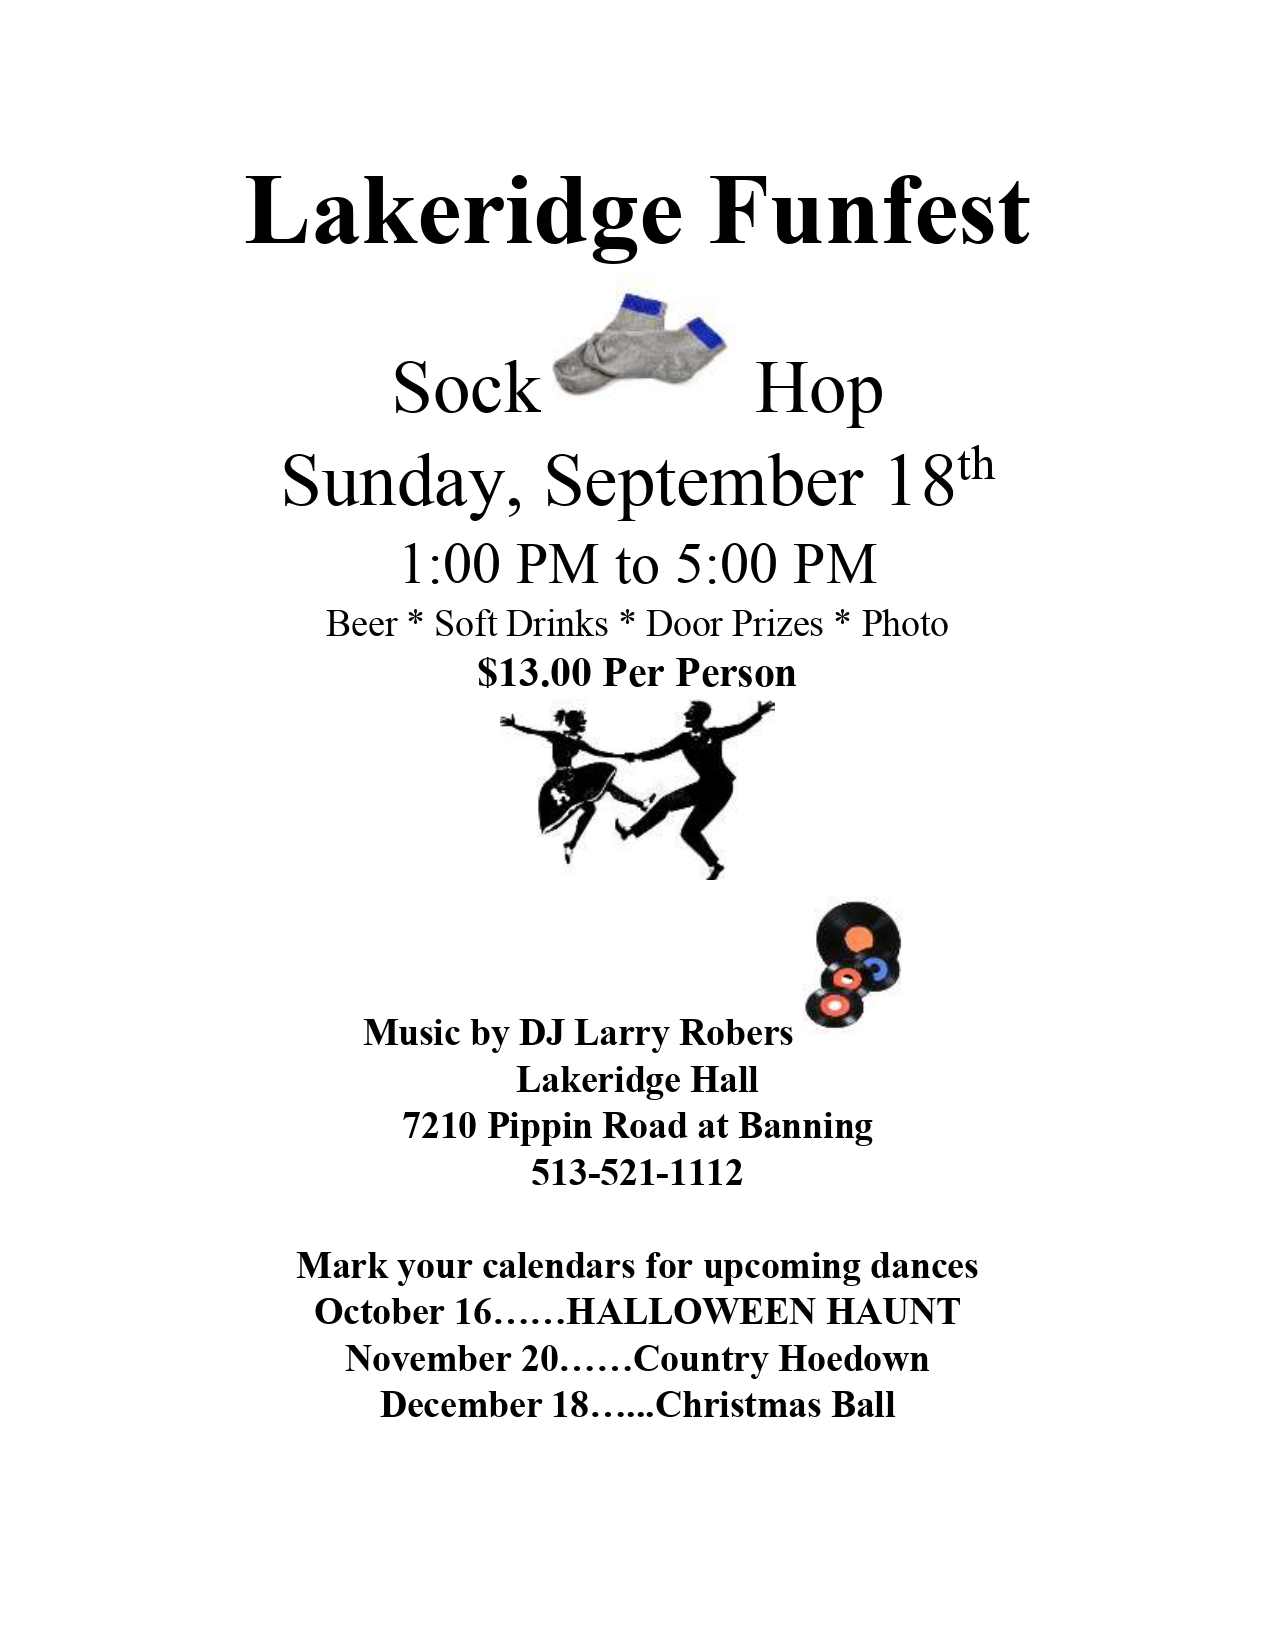 Lakeridge Hall August Funfest Dance - Hawaiian Luau